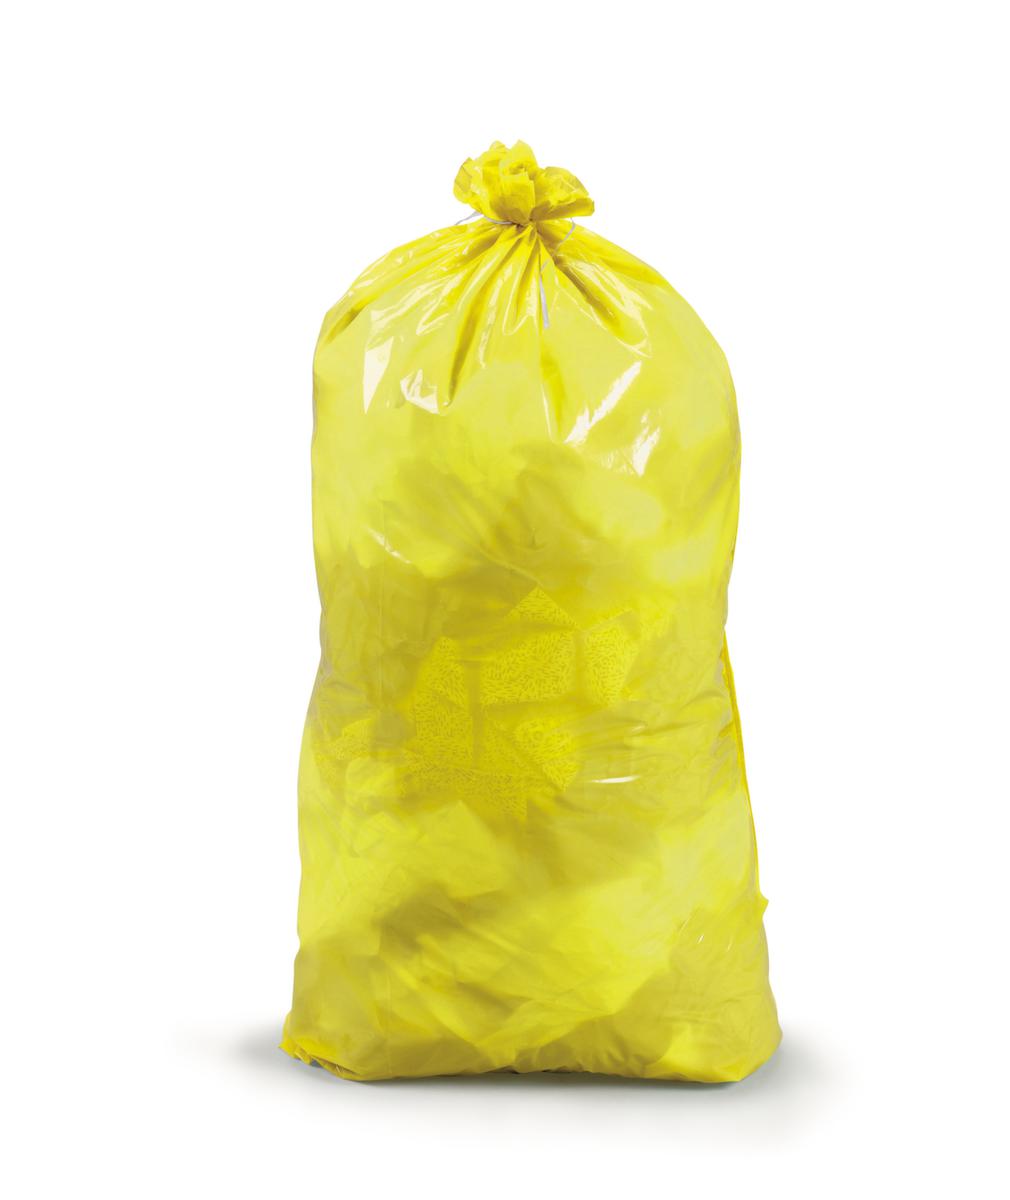 Raja Reißfester Müllsack mit Verschlussband, 110 l, gelb Standard 1 ZOOM